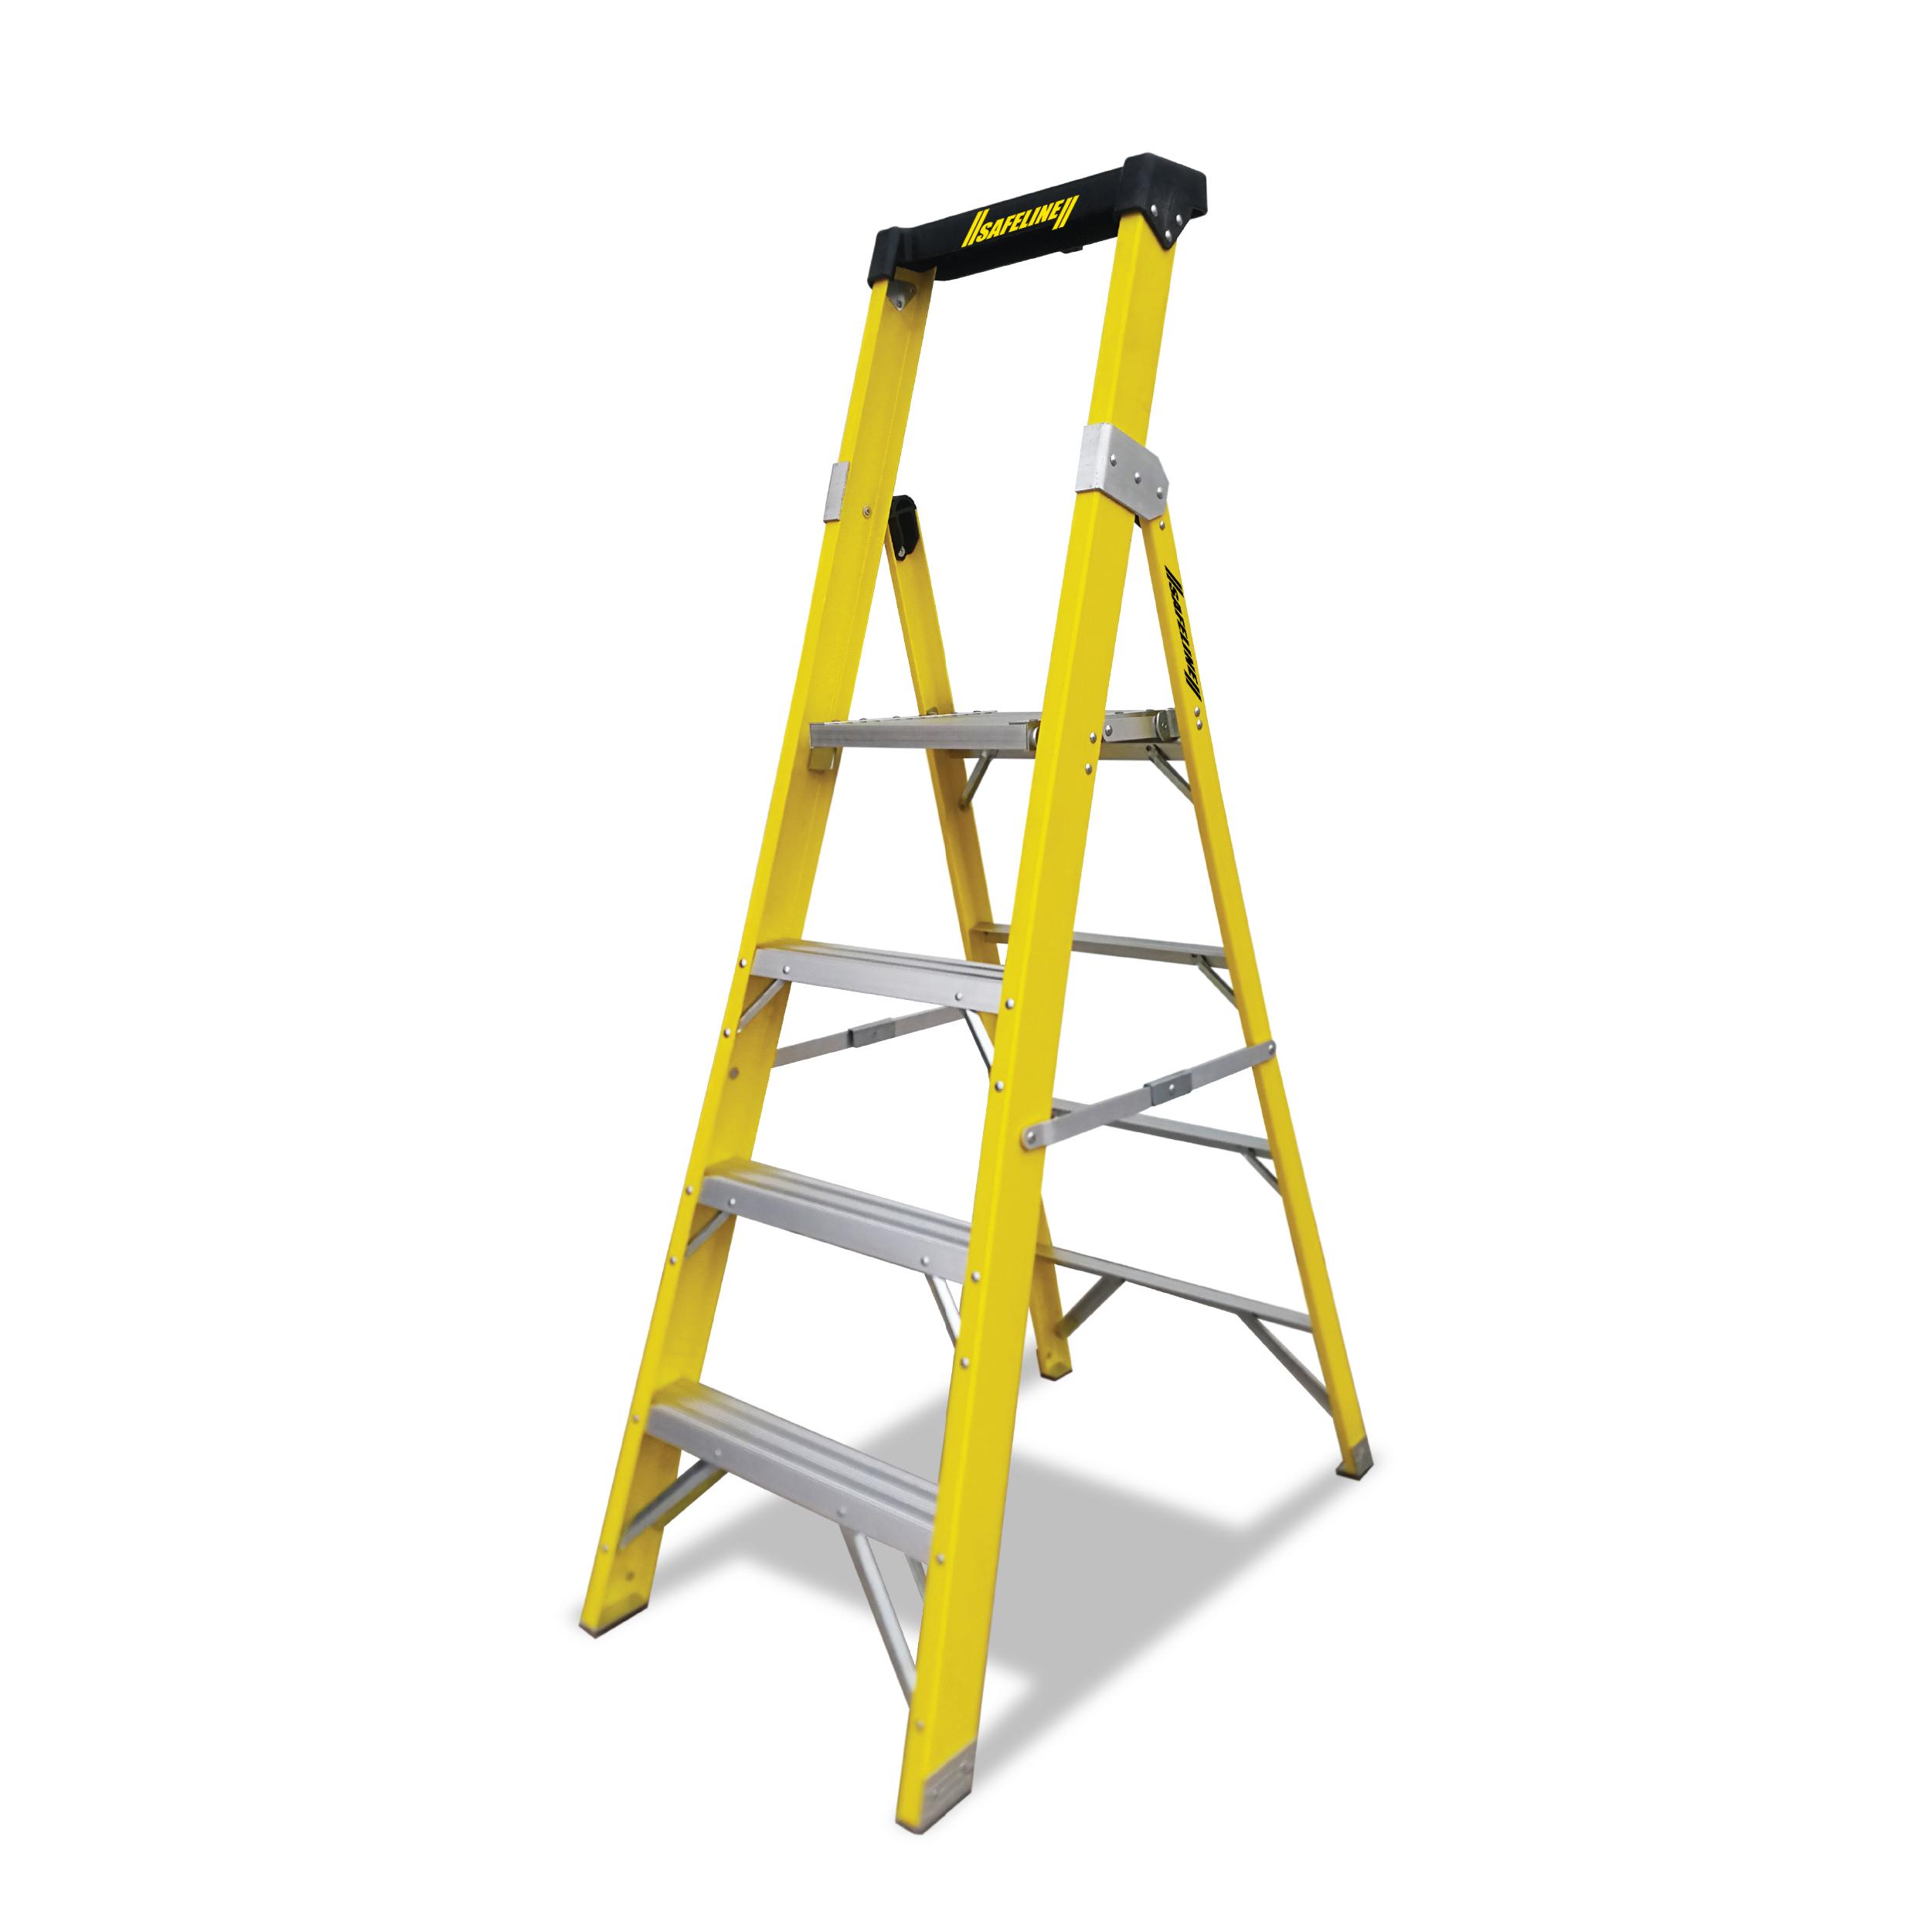 Safeline Platform Fibreglass Ladder